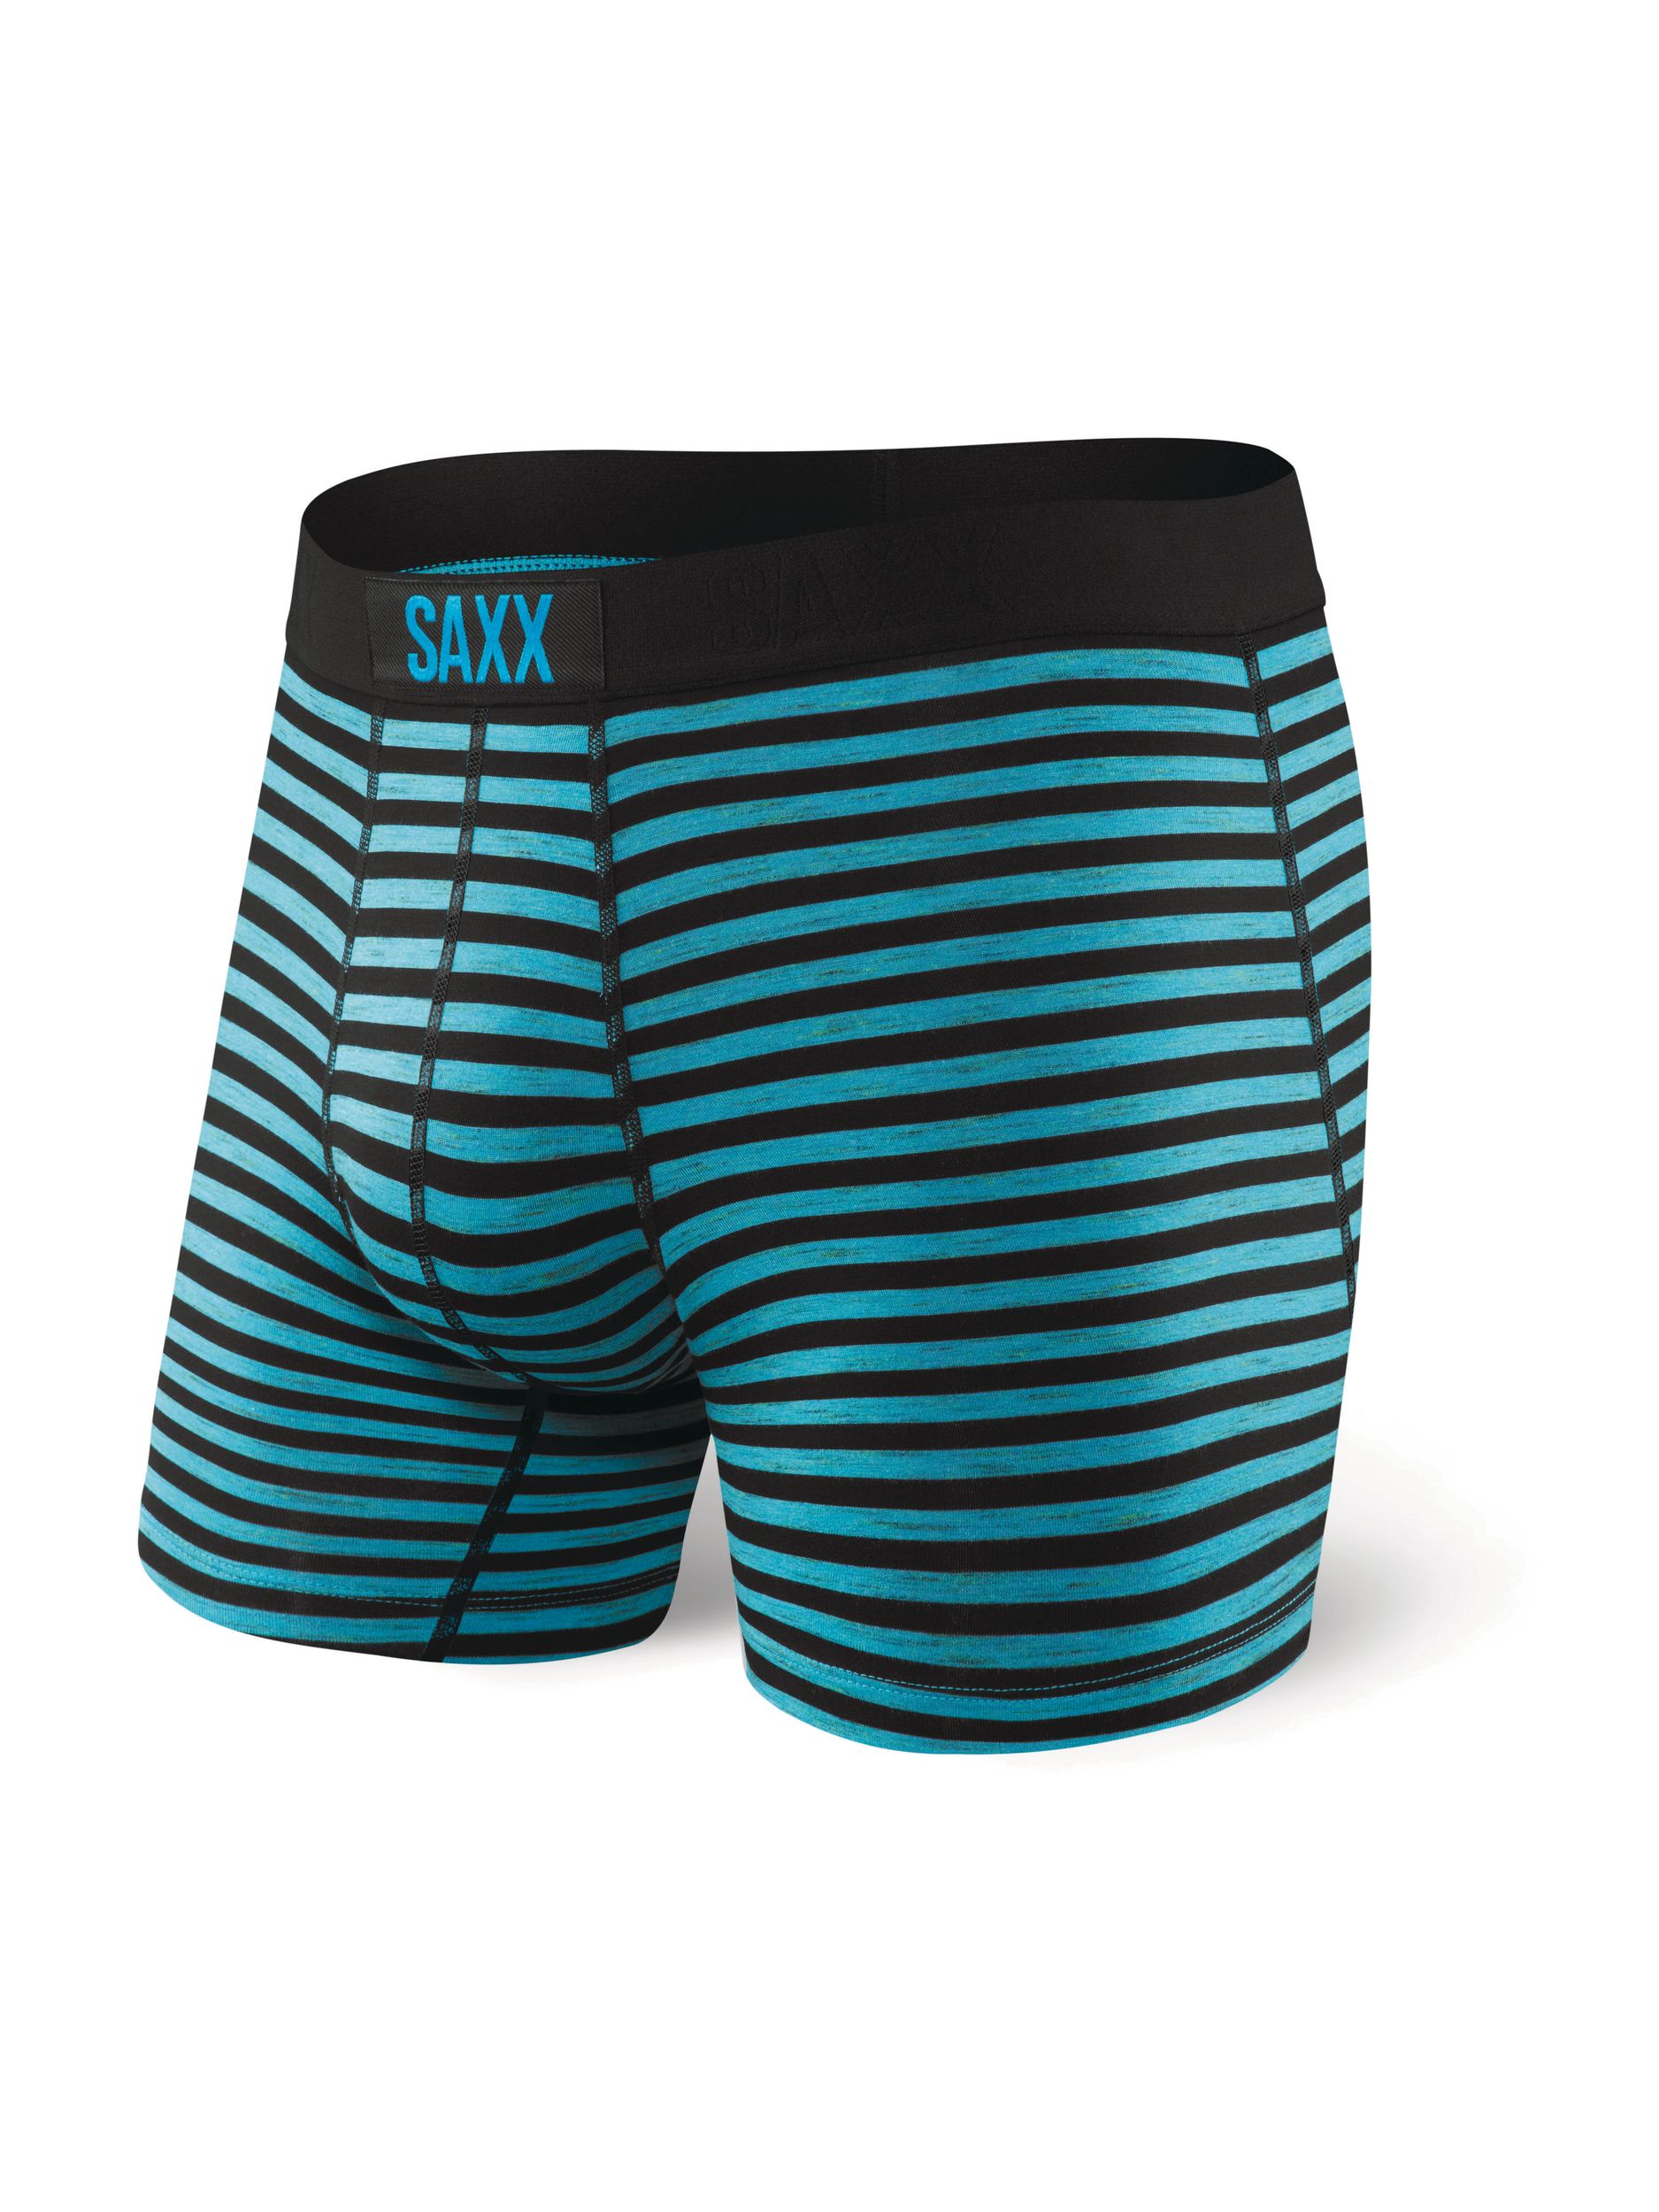 SAXX Volt Men's Boxer Brief, Underwear, Breathable, Slim Fit